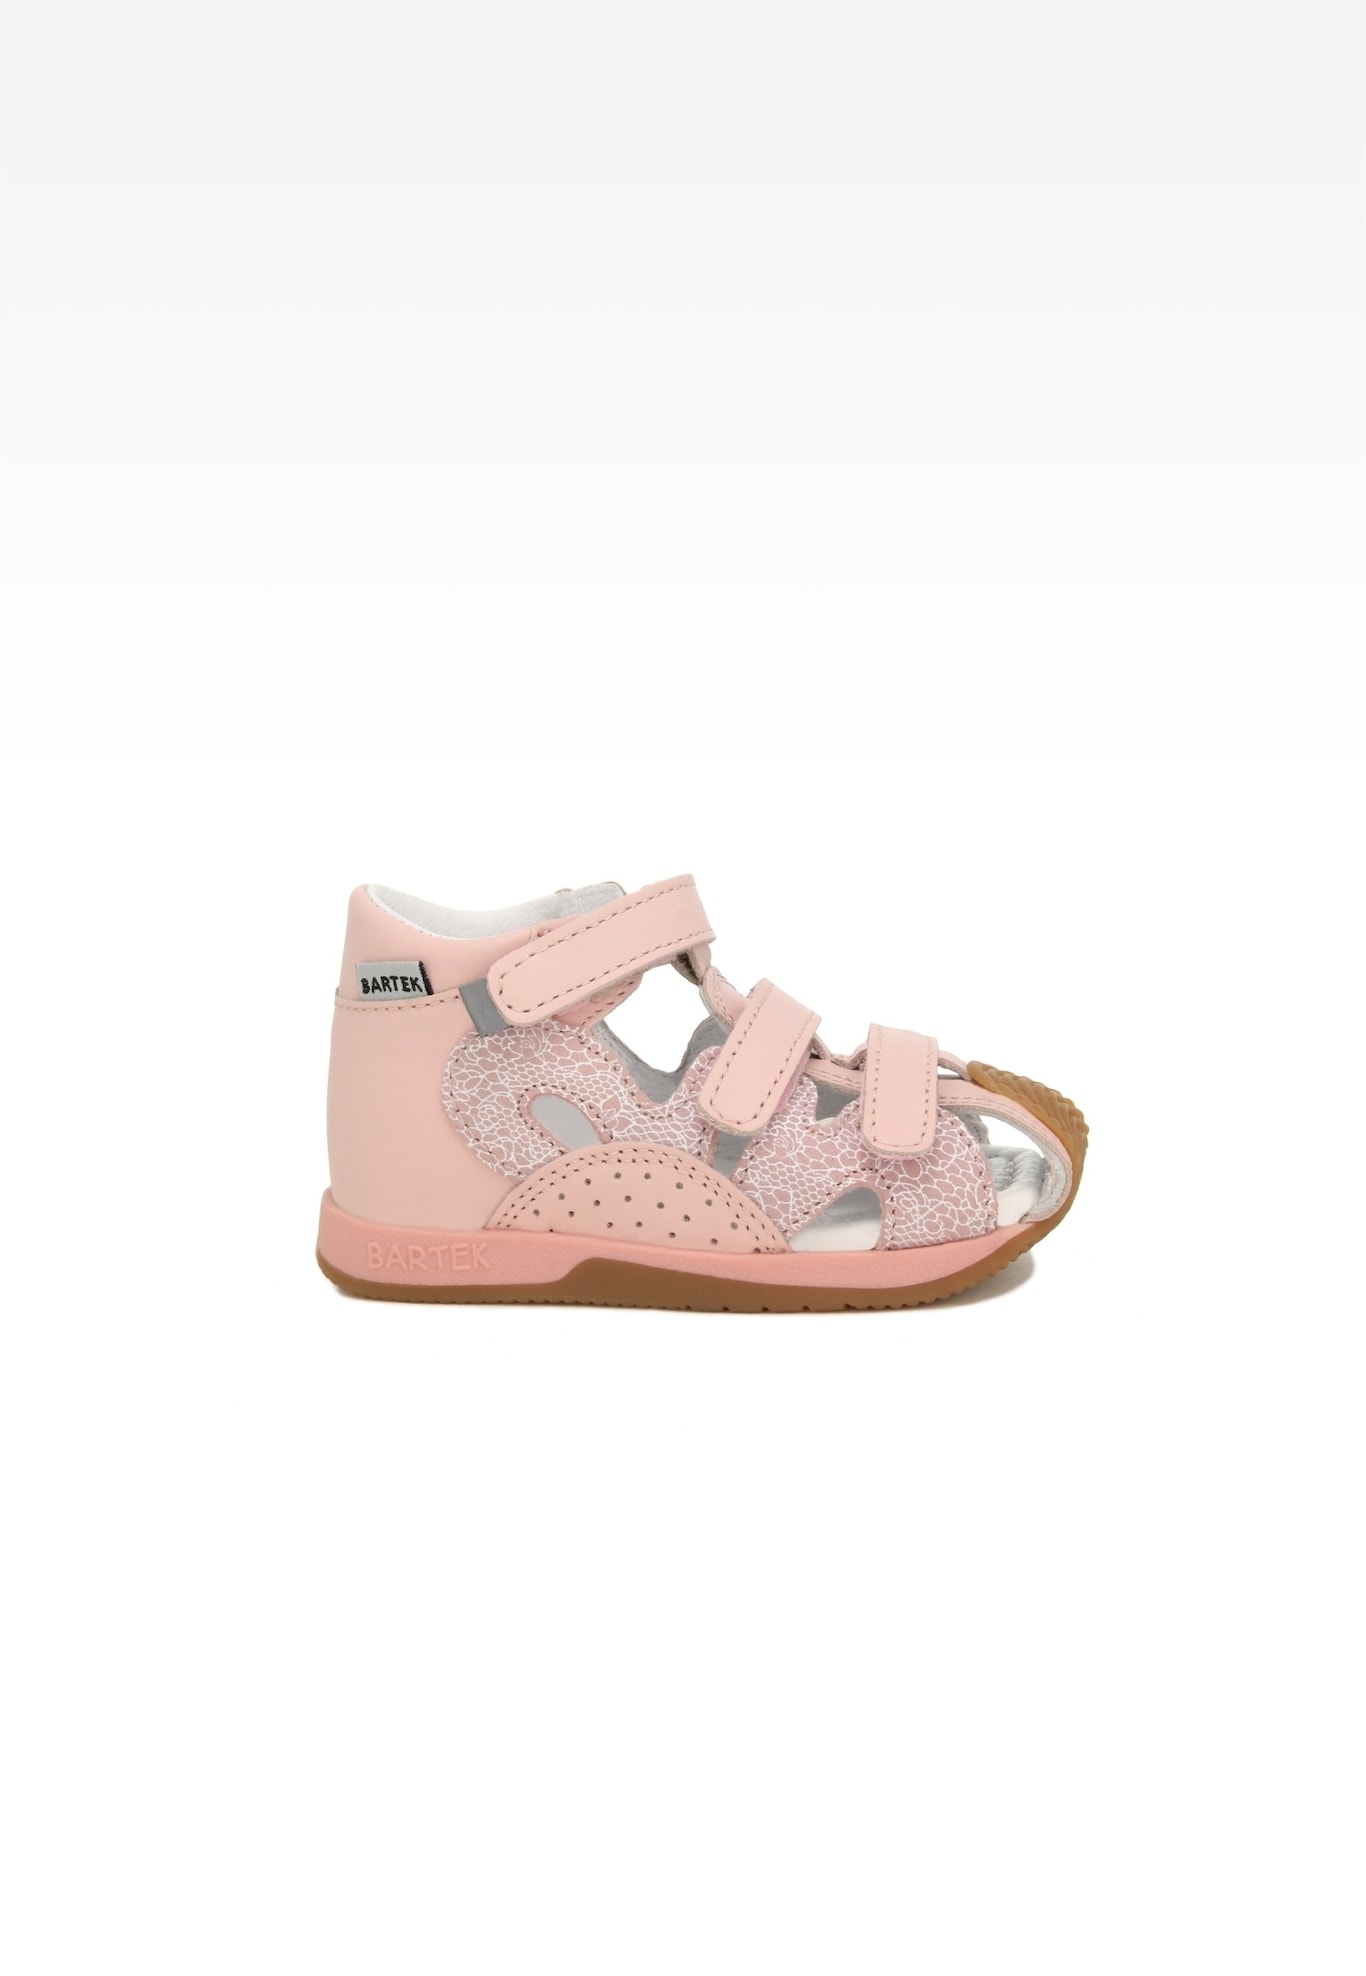 Sandały BARTEK 081021-002 II, dla dziewcząt, jasno różowy